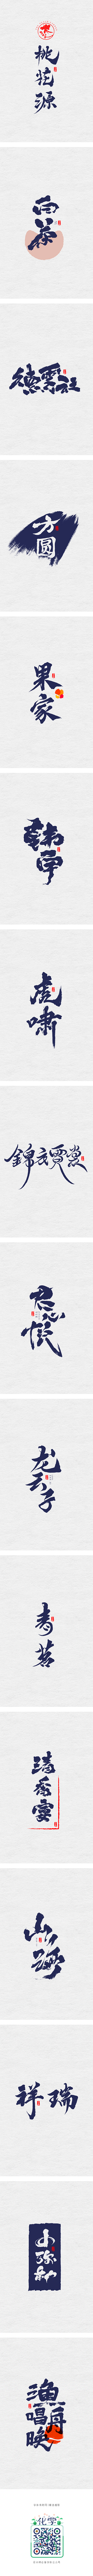 【字逍遥】-字体传奇网-中国首个字体品牌...